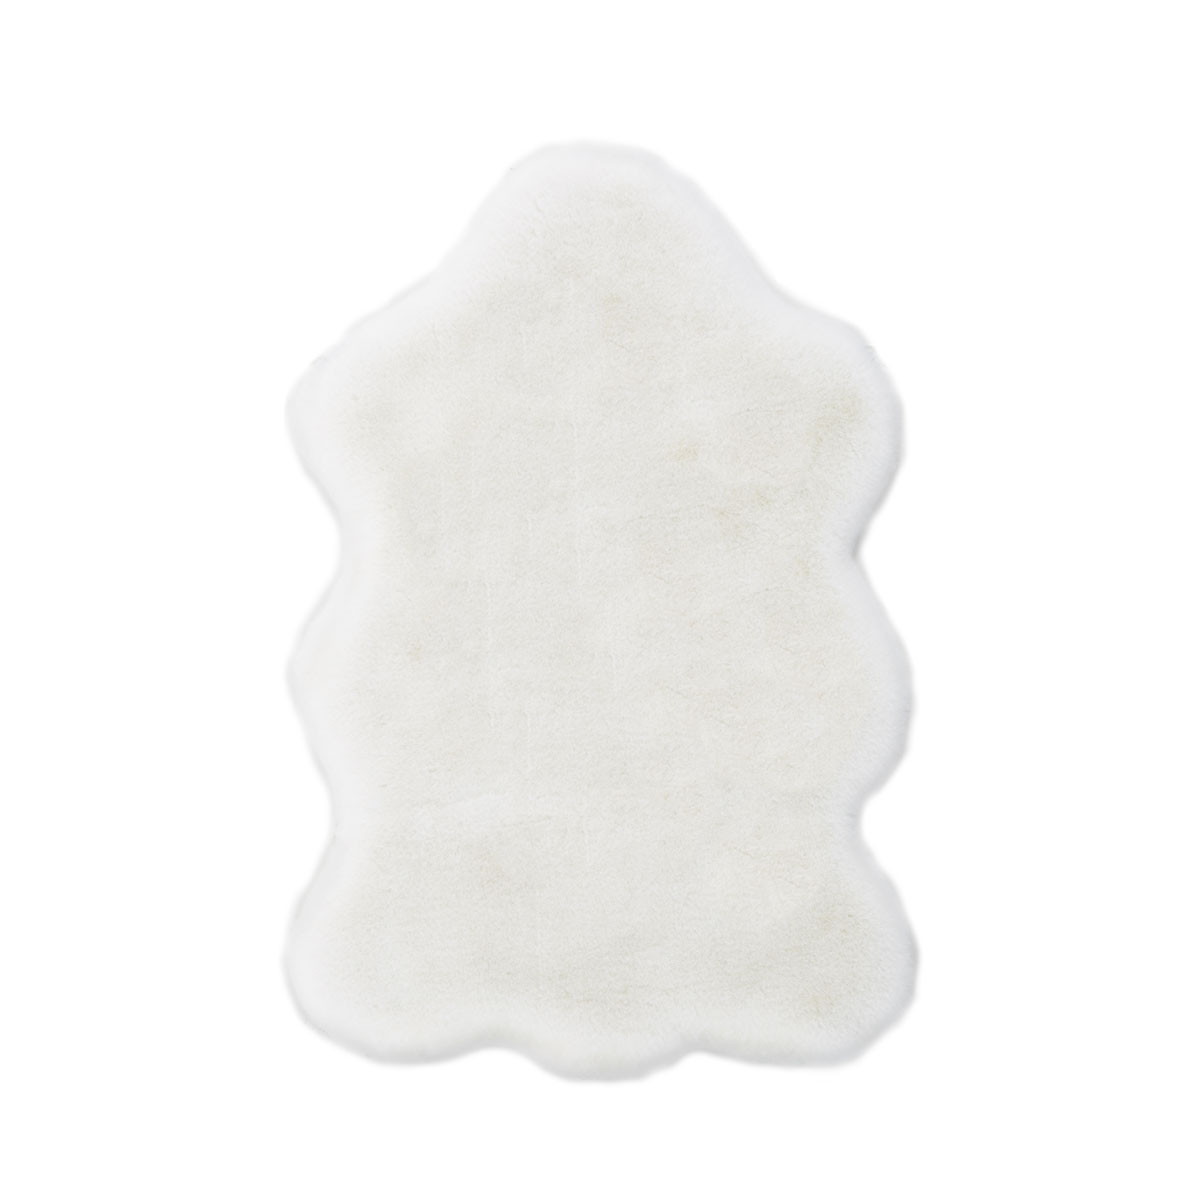 Teppich „Cingoli“ 55x80 cm, weiß 